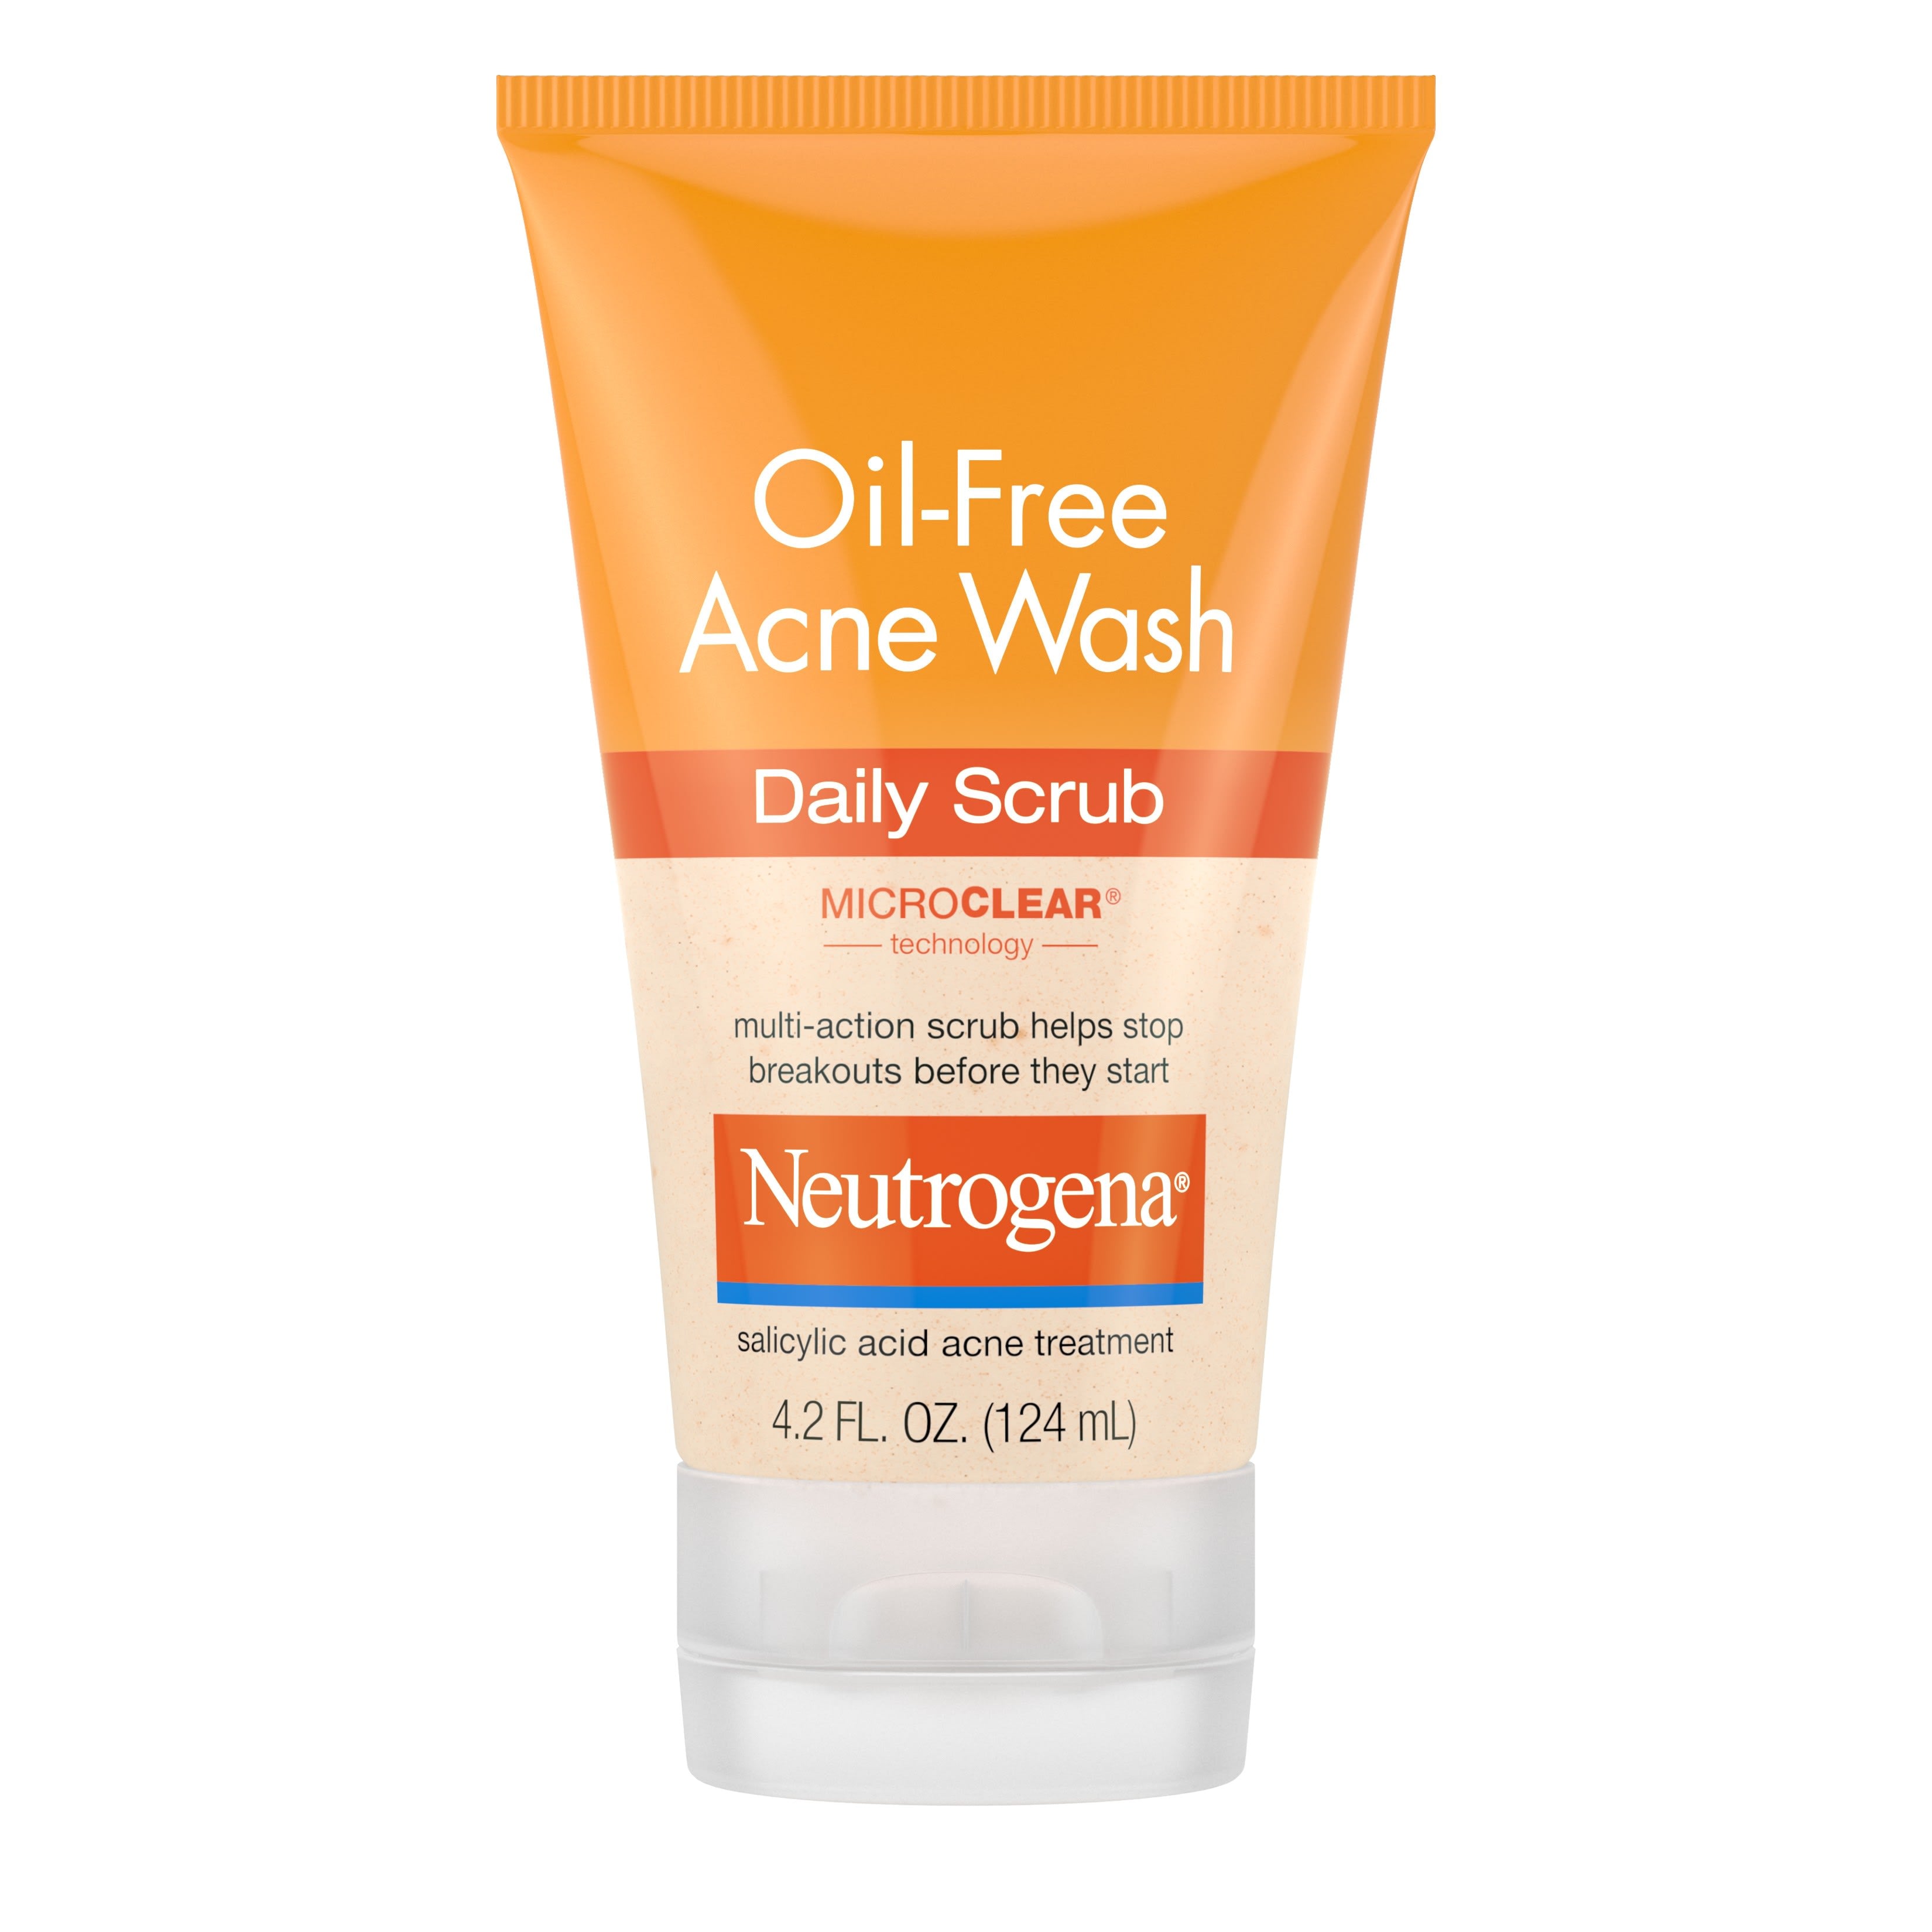 Neutrogena Oil-Free Acne Face Scrub with 2% Salicylic Acid, 4.2 fl. oz | MTTS285